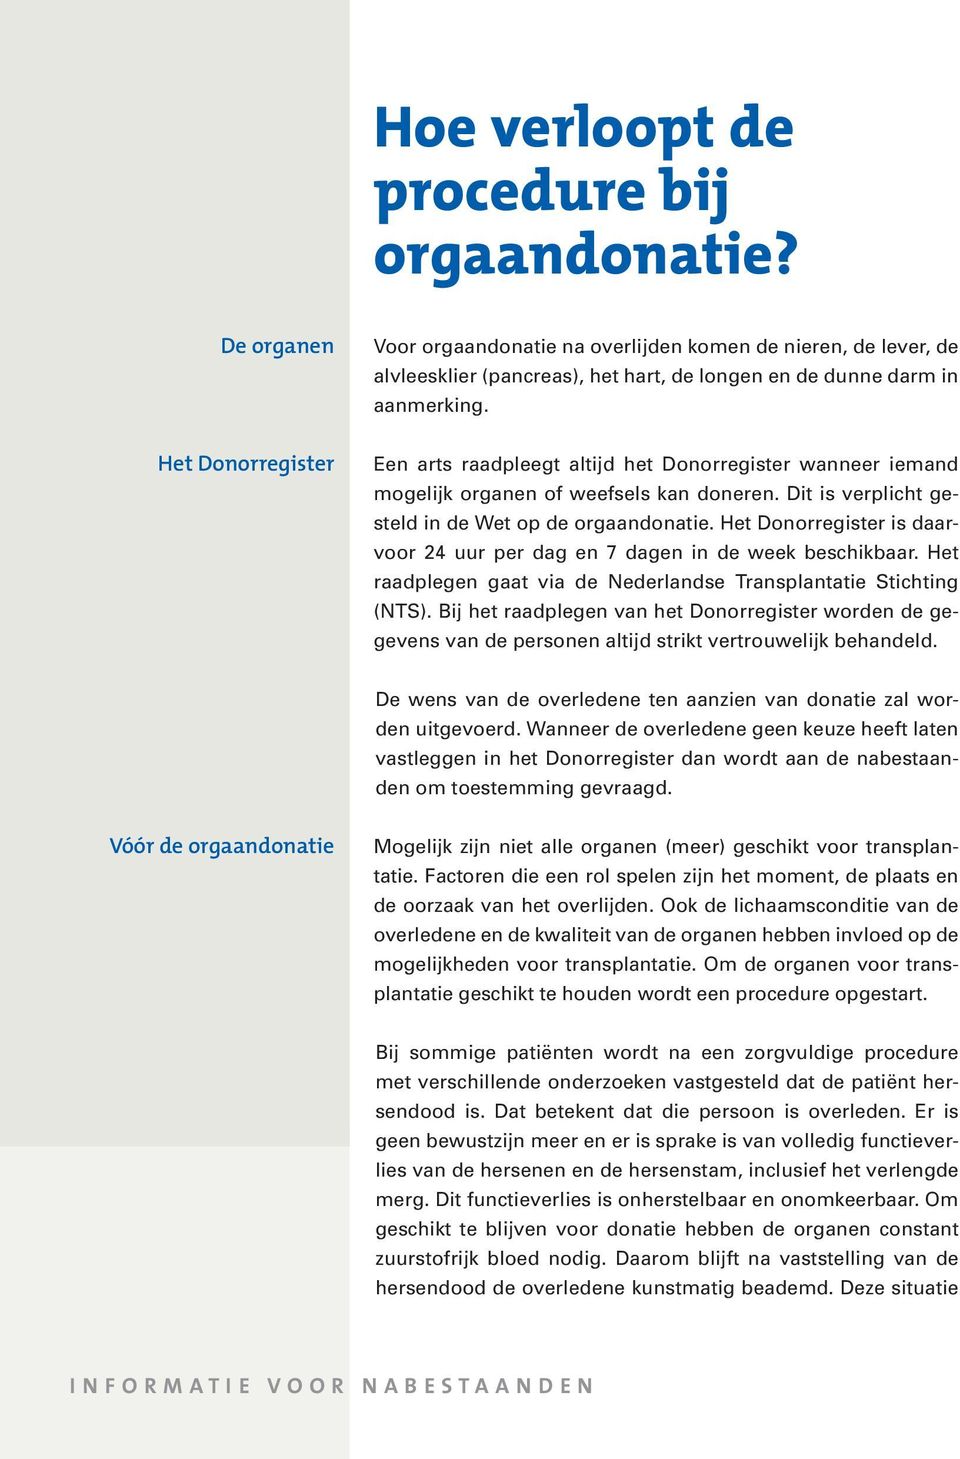 Het Donorregister is daarvoor 24 uur per dag en 7 dagen in de week beschikbaar. Het raadplegen gaat via de Nederlandse Transplantatie Stichting (NTS).